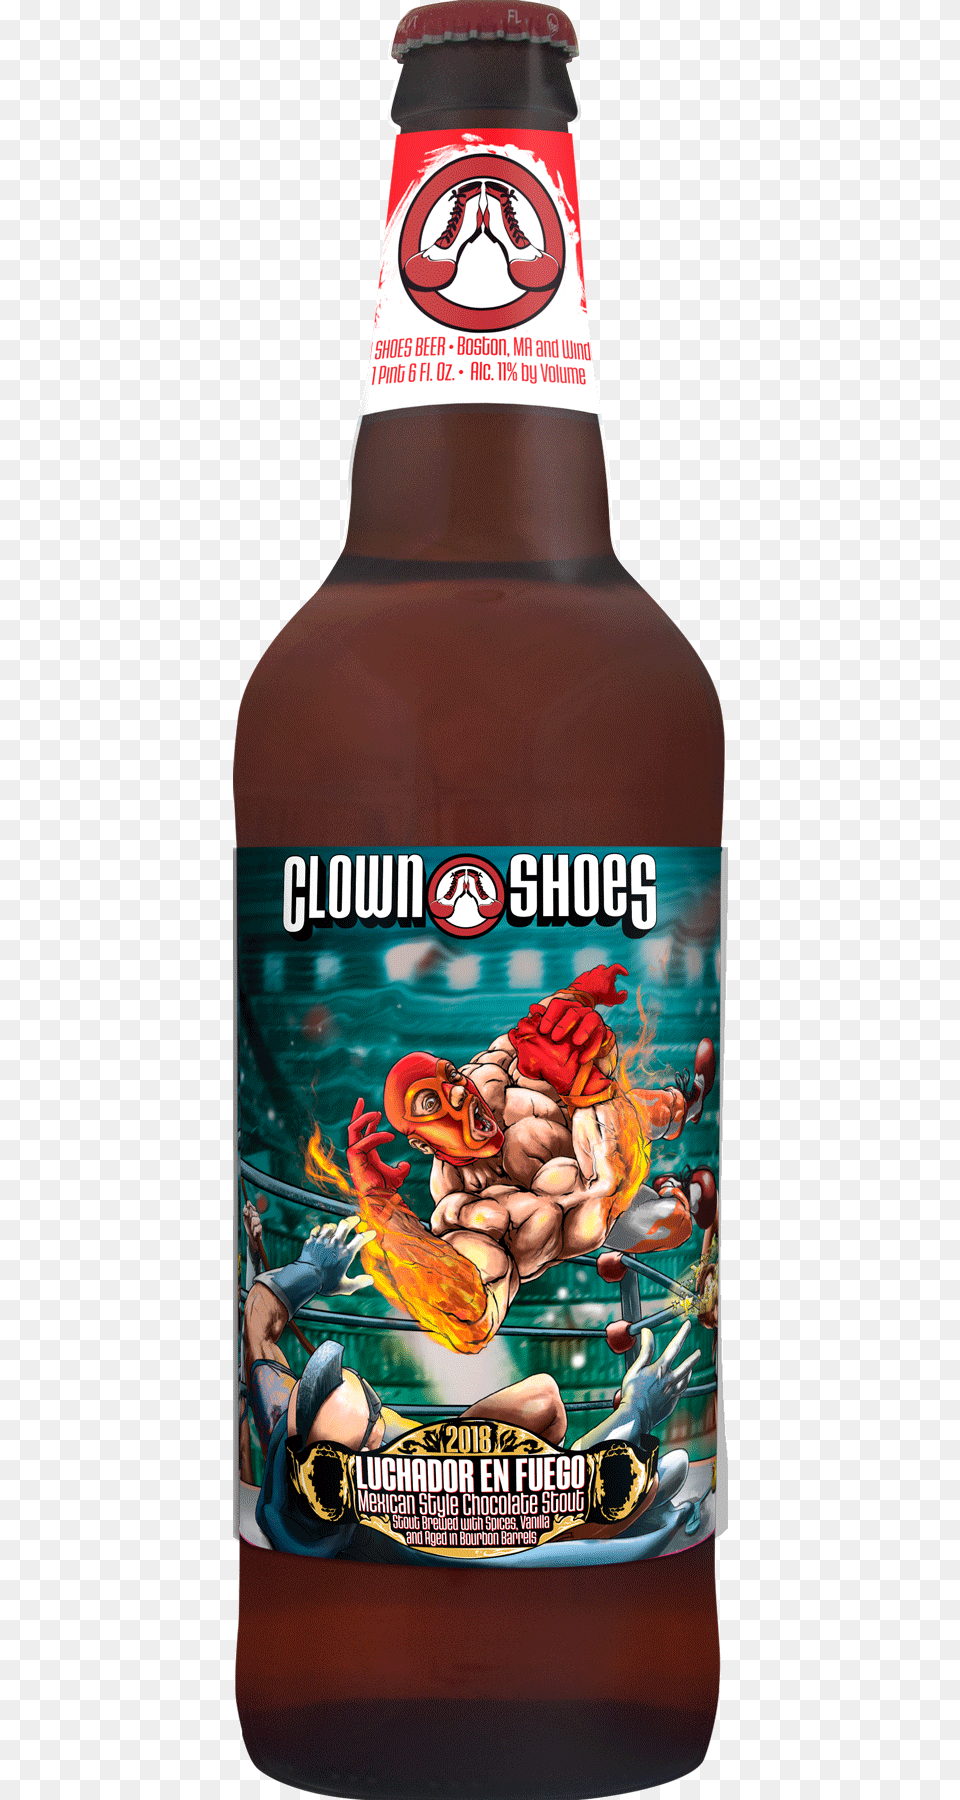 Clown Shoes Beer, Alcohol, Beverage, Lager, Beer Bottle Png Image